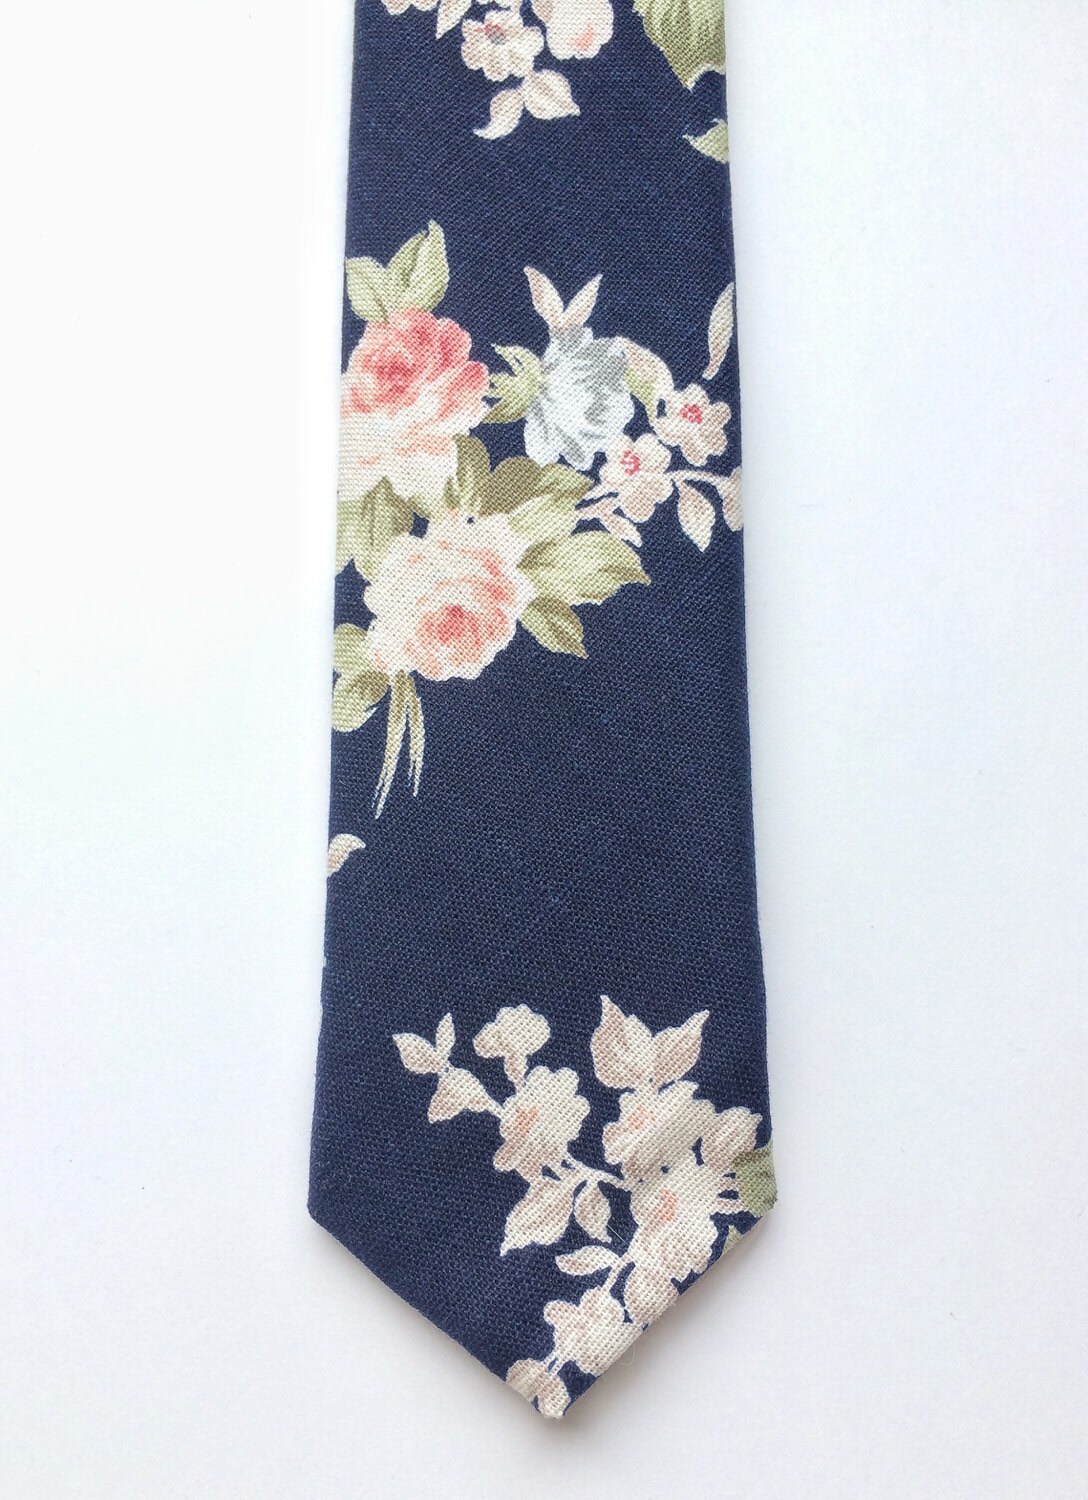 Floral tie navy blue skinny tie blush pink floral tie mens